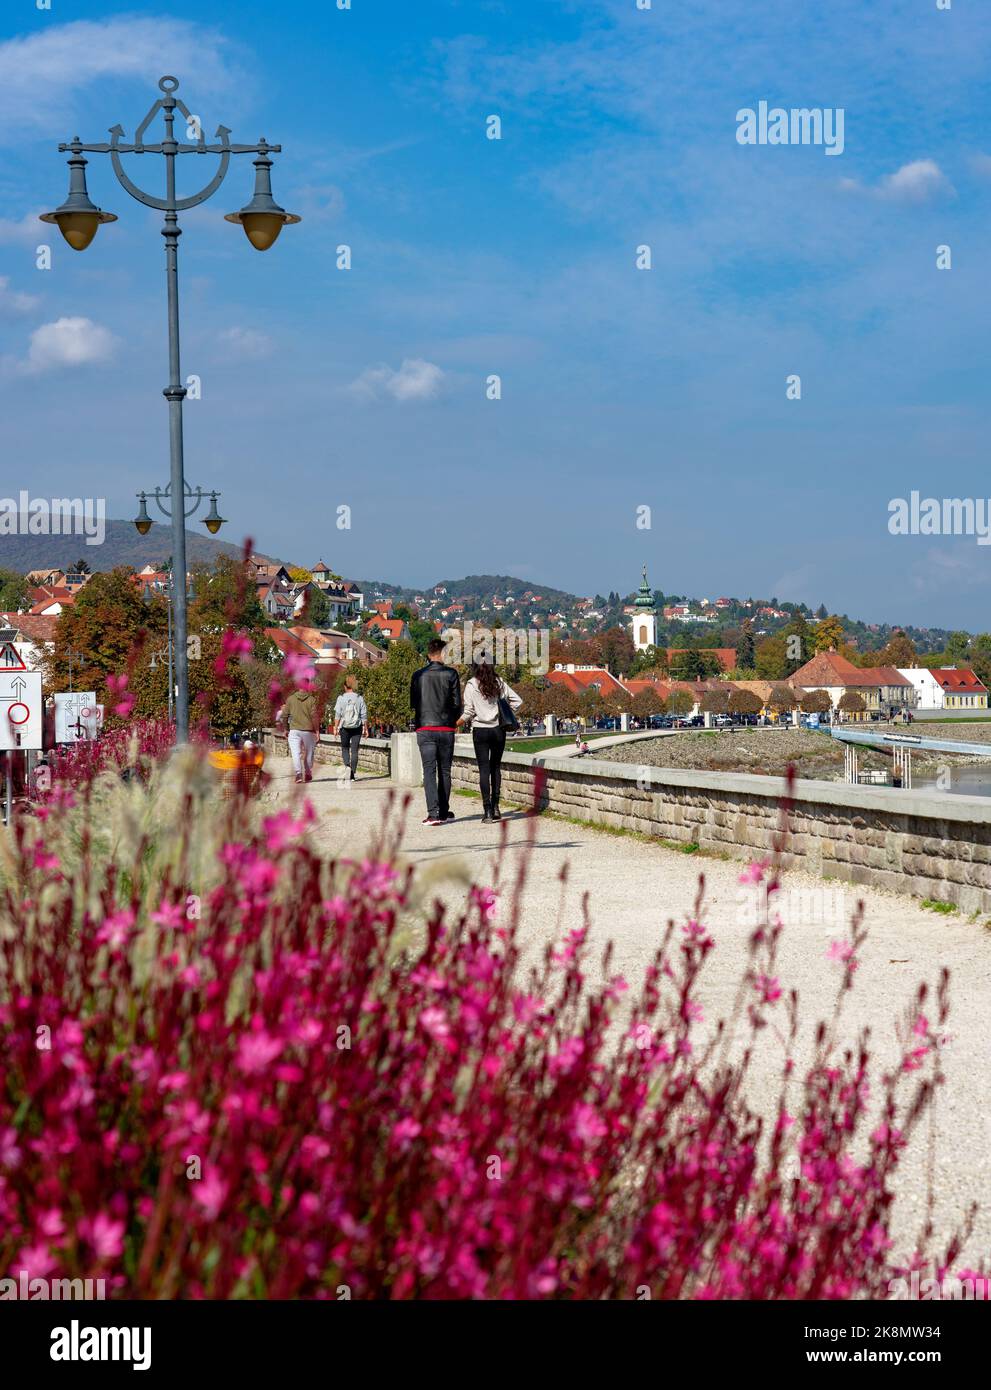 Belle rive du fleuve à Szentendre, à côté du Danube, avec promenade et fleur rose Gaura lindheimeri Banque D'Images